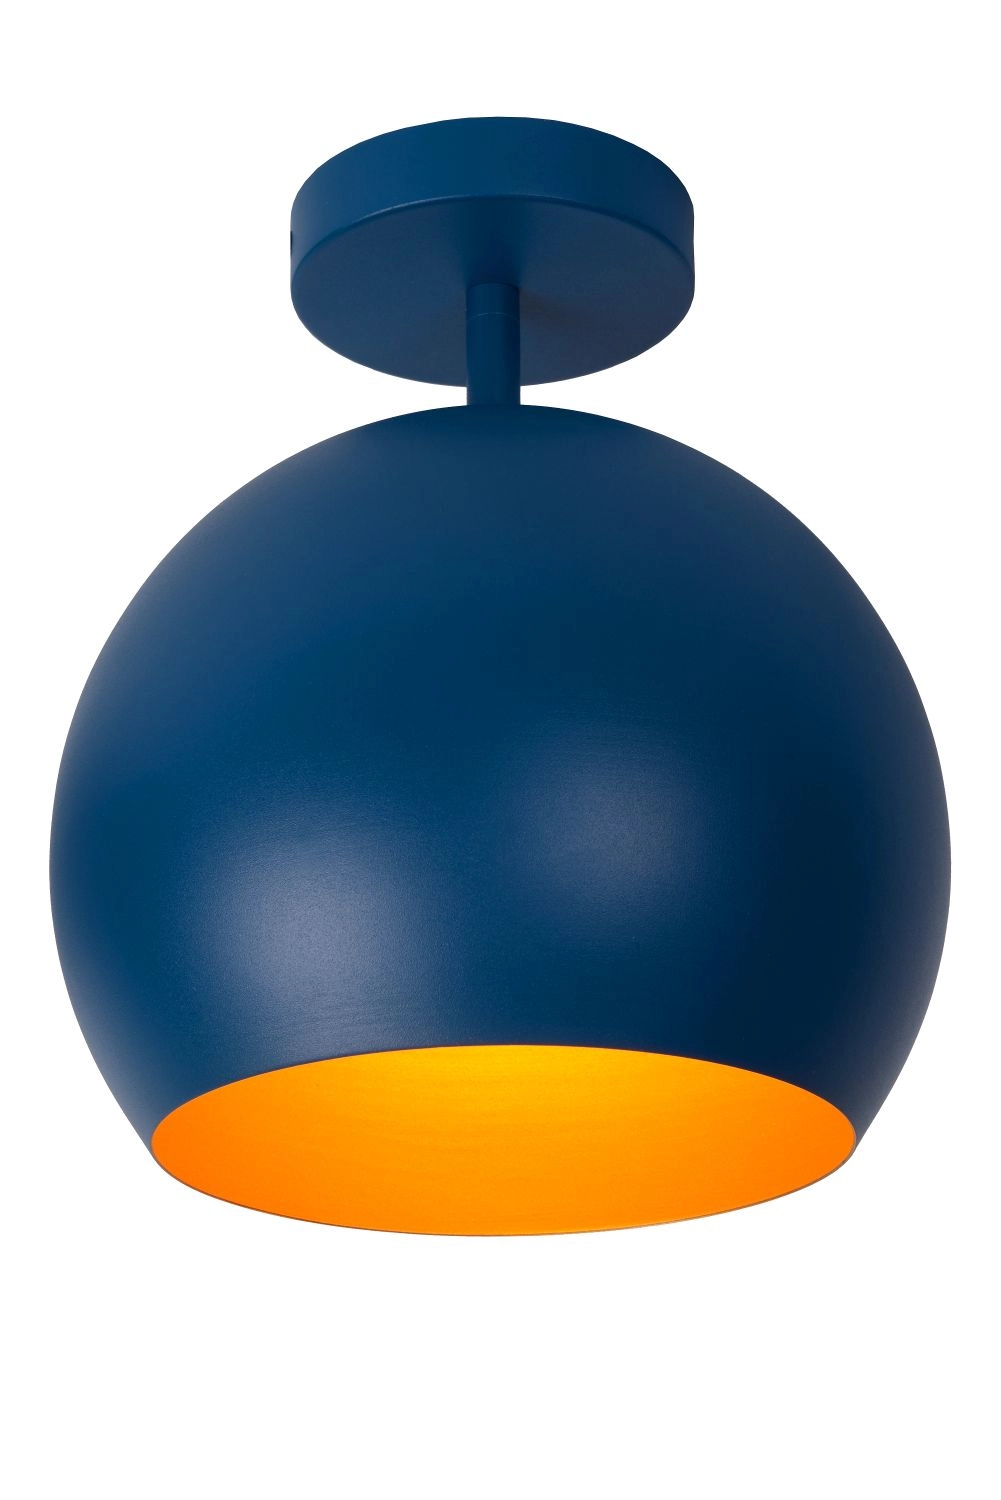 LU 45150/01/35 Lucide BINK - Flush ceiling light - Ø 24,5 cm - 1xE27 - Blue